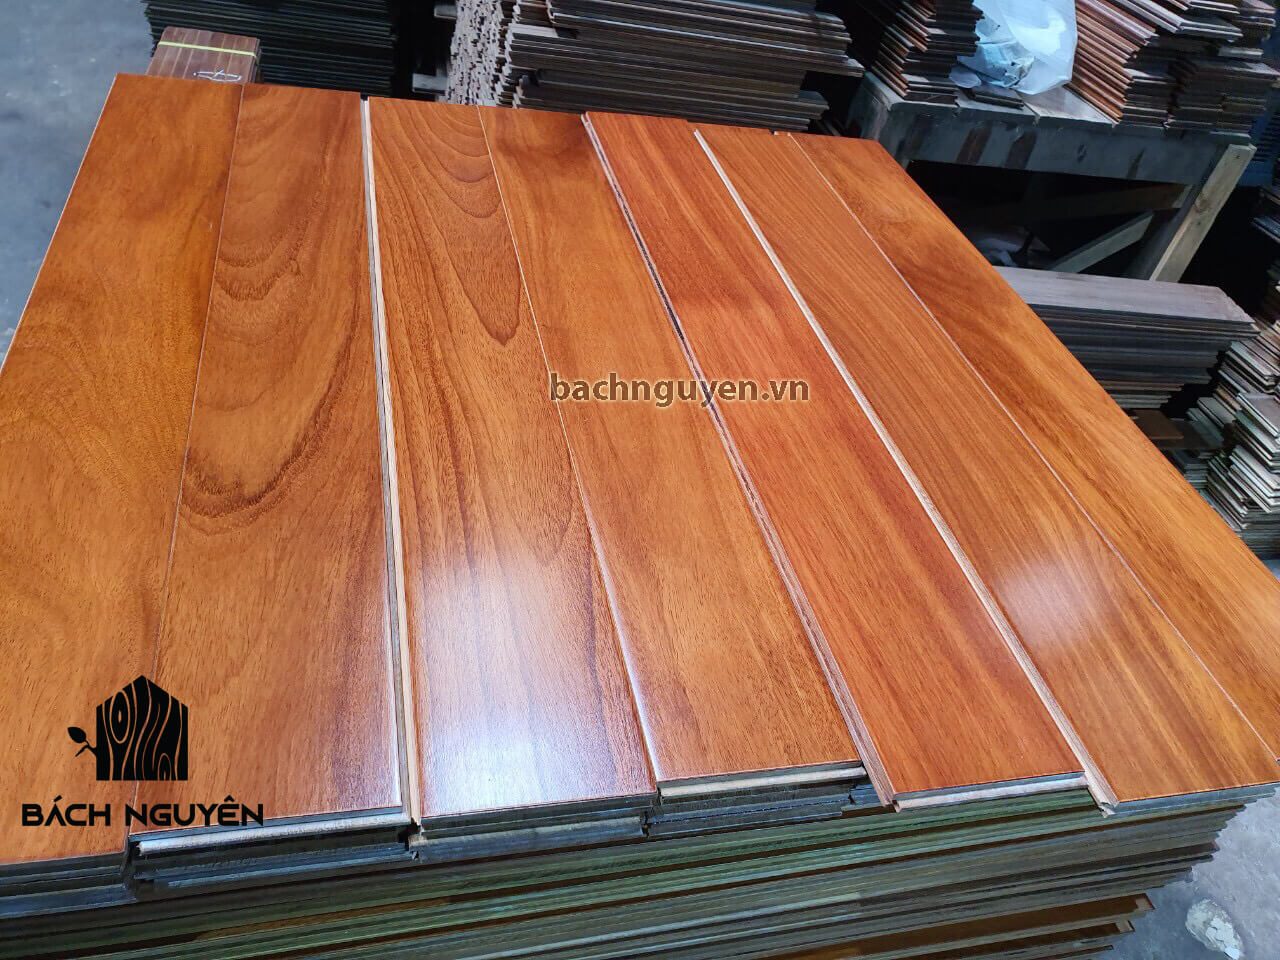 Sàn gỗ tự nhiên và sàn gỗ công nghiệp cái nào tốt hơn